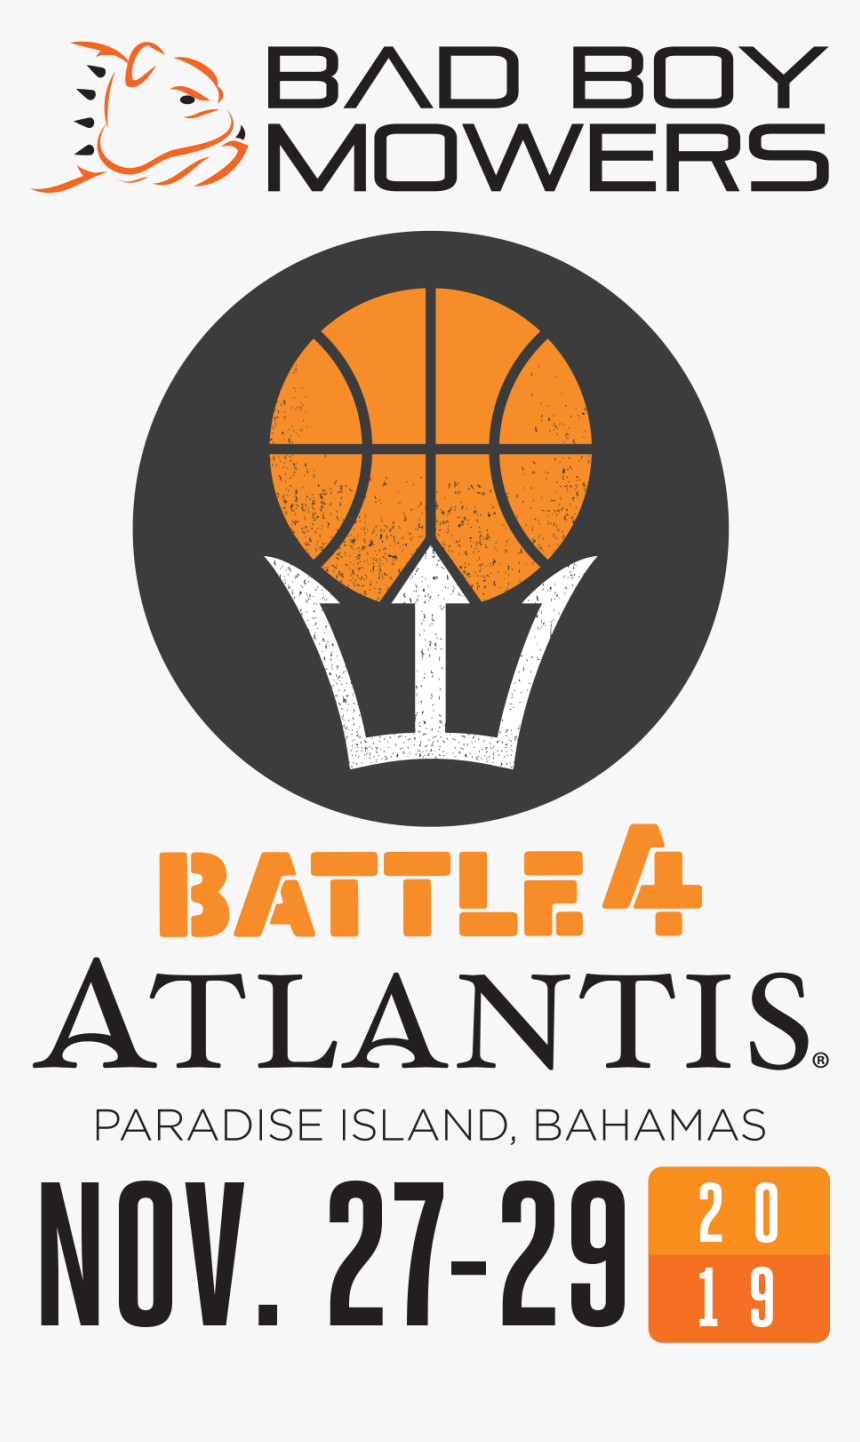 Atlantis The Palm Dubai, HD Png Download, Free Download